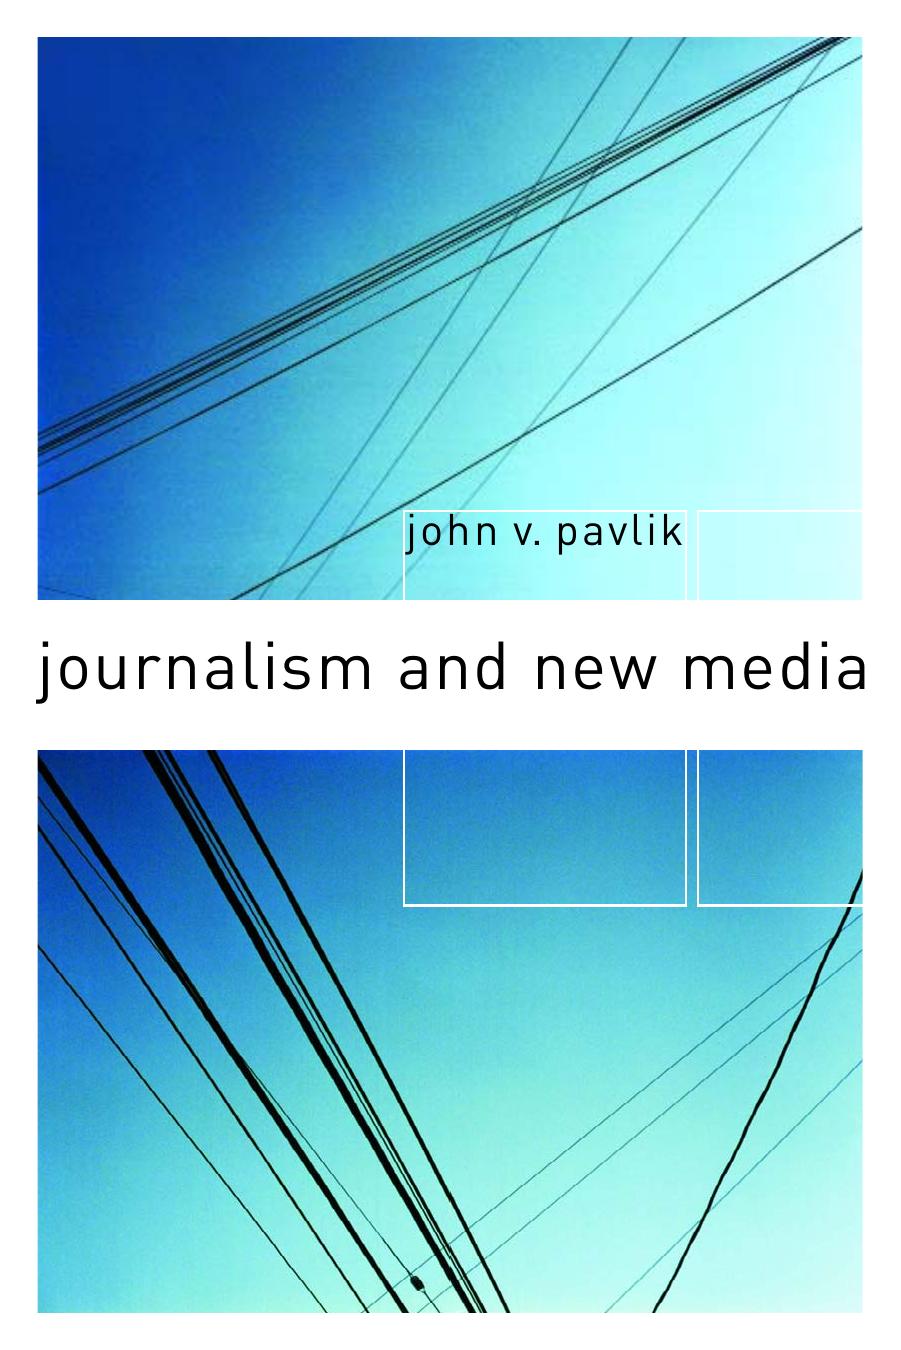 [John V. Pavlik] Journalism and New Media 2001